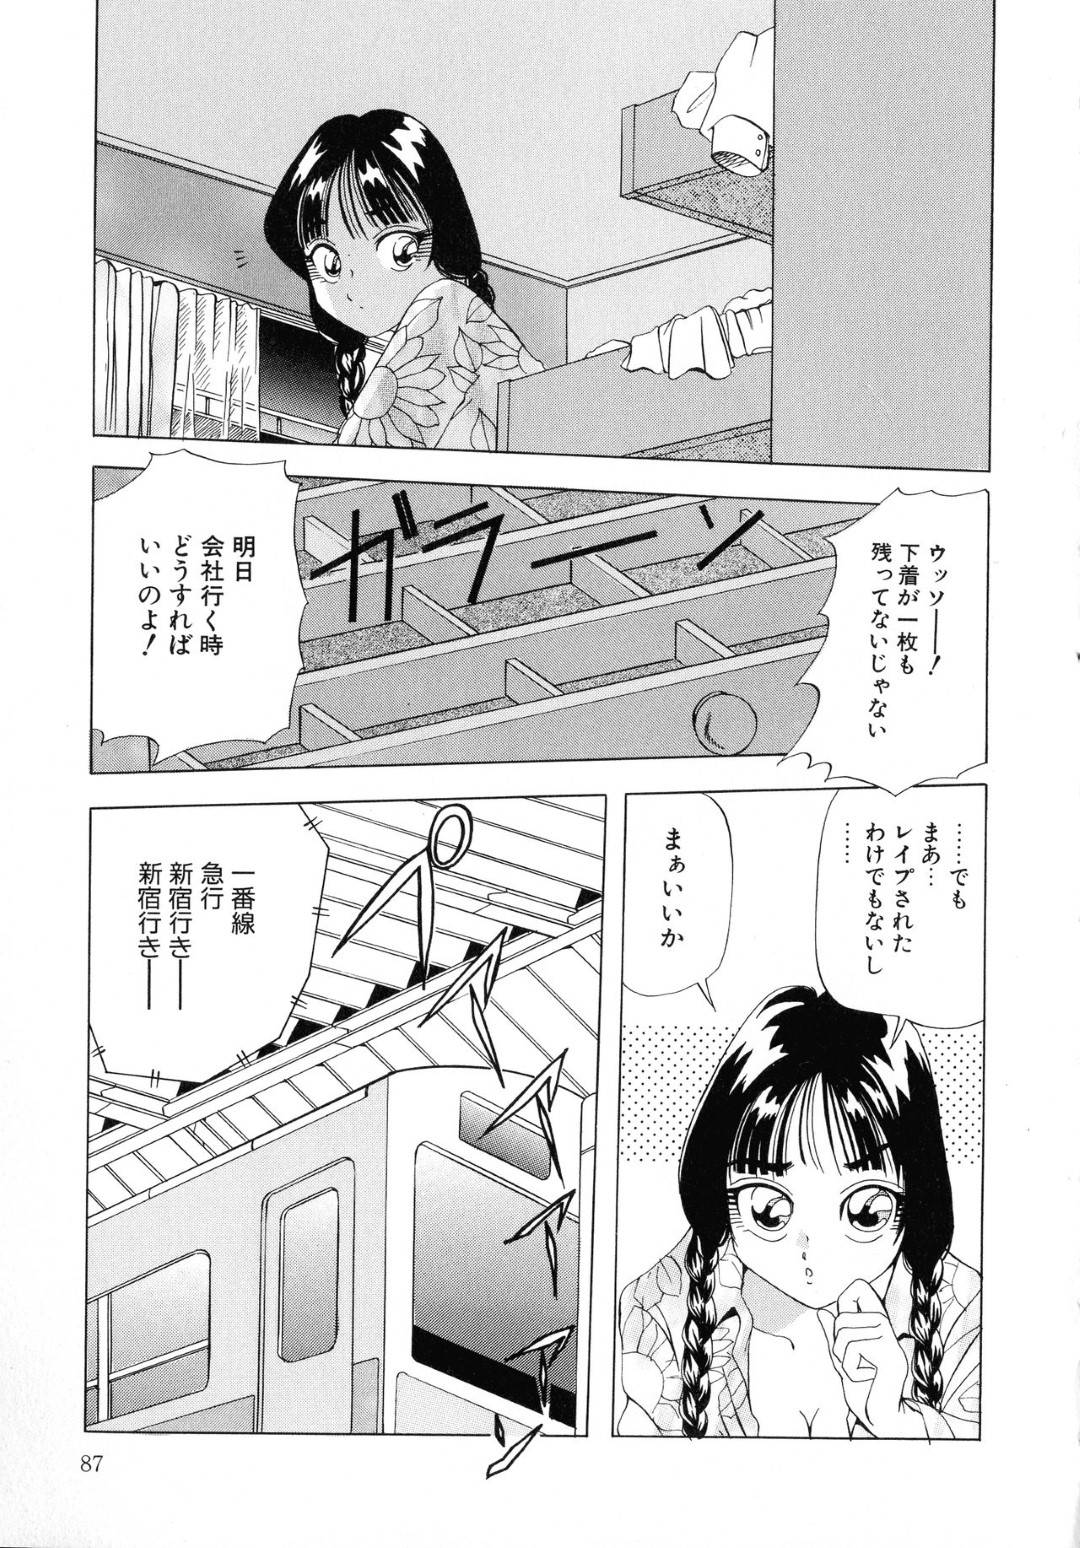 【エロ漫画】下着泥棒に下着を盗まれノーパンノーブラで電車に乗るお姉さんは痴漢車両で輪姦レイプされてしまう